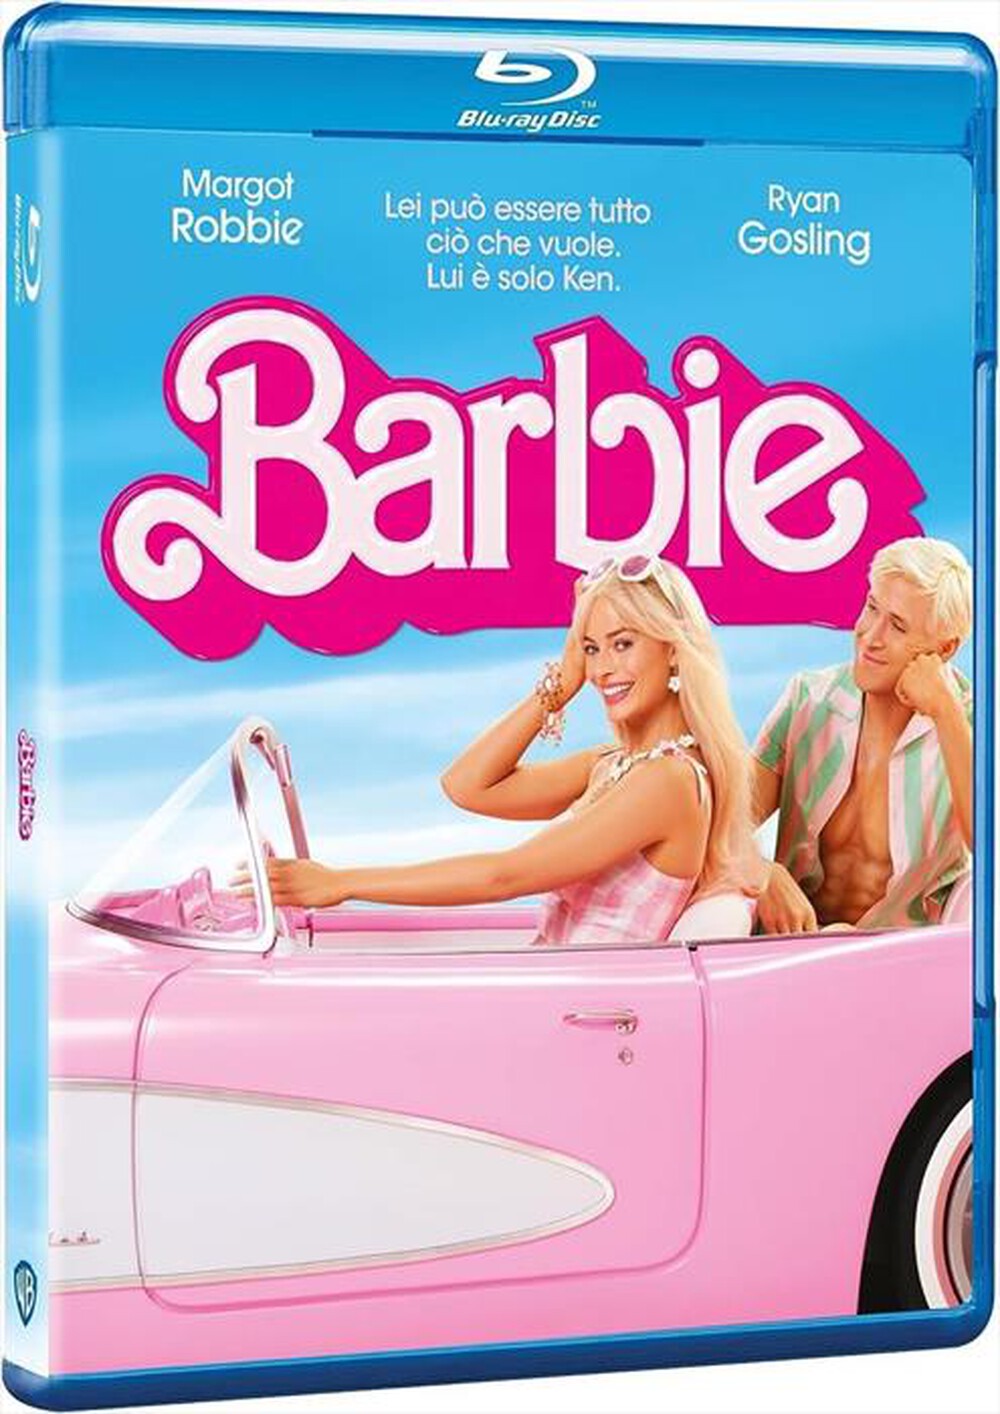 "WARNER HOME VIDEO - Barbie"